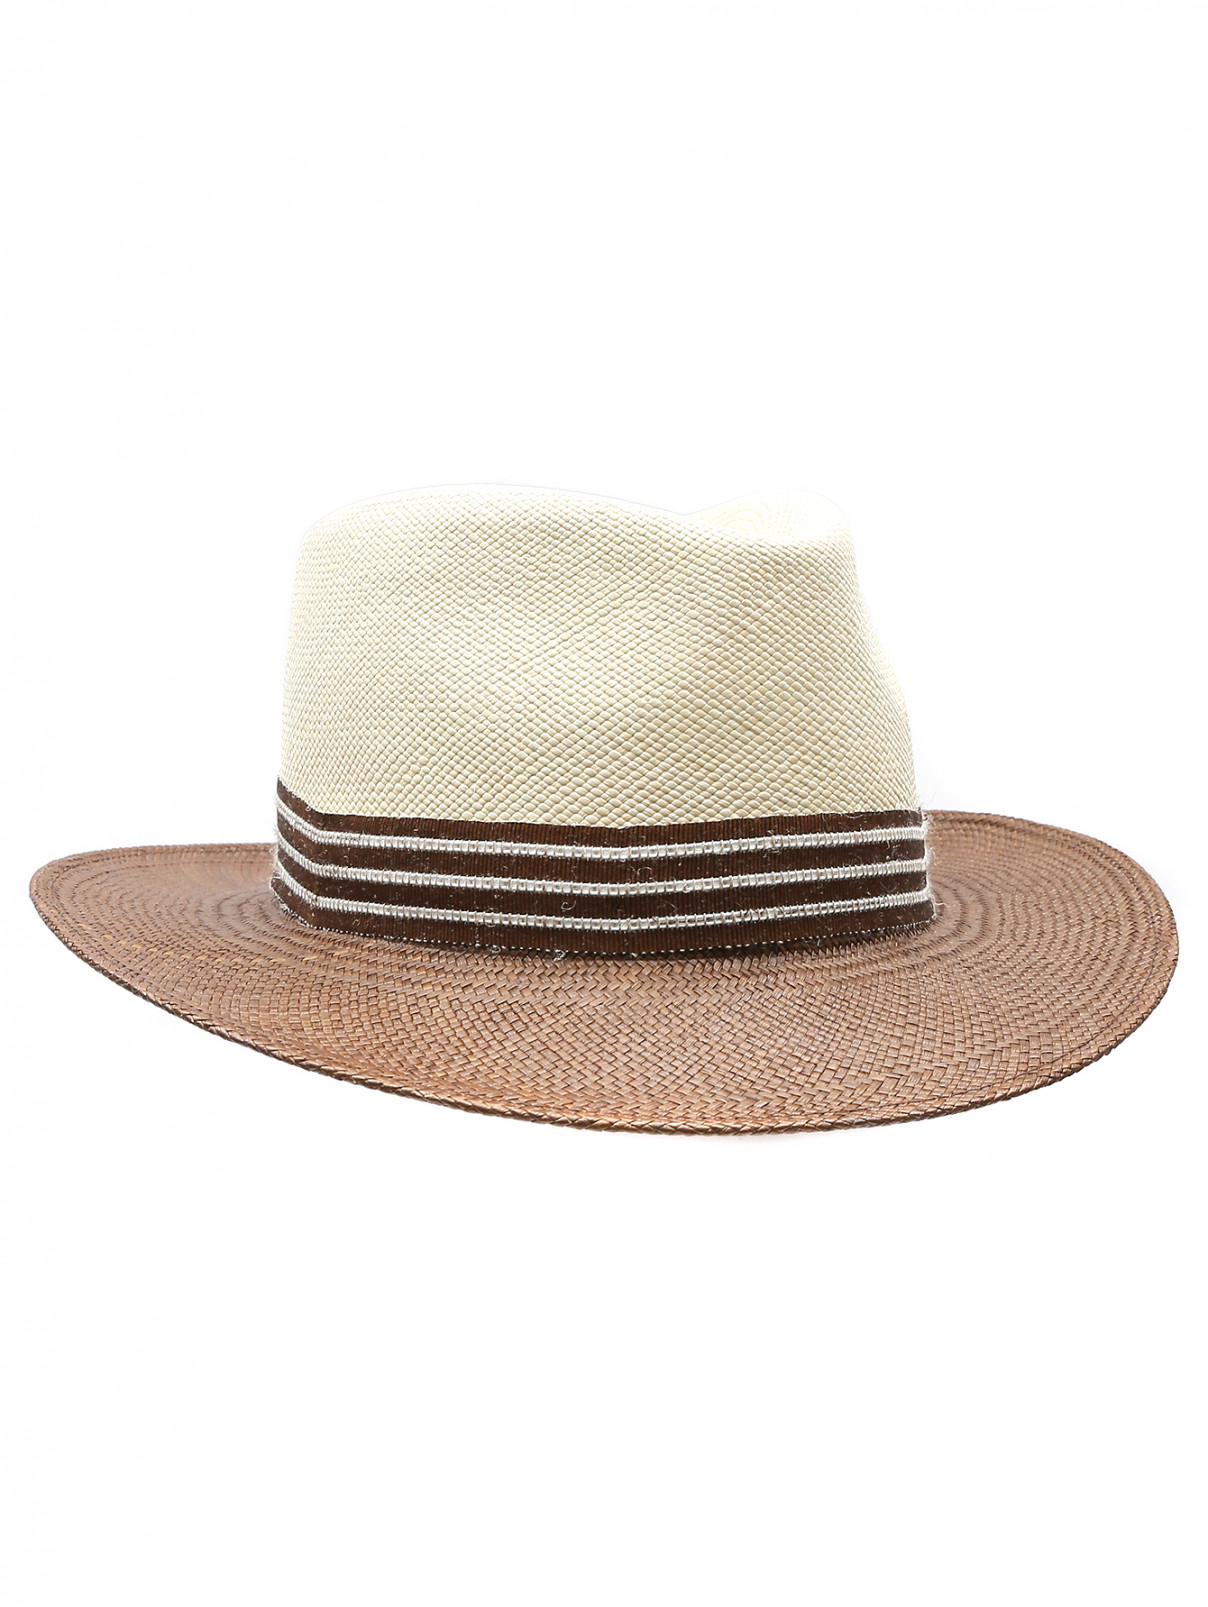 Шляпа из соломы с лентой Stetson  –  Общий вид  – Цвет:  Коричневый